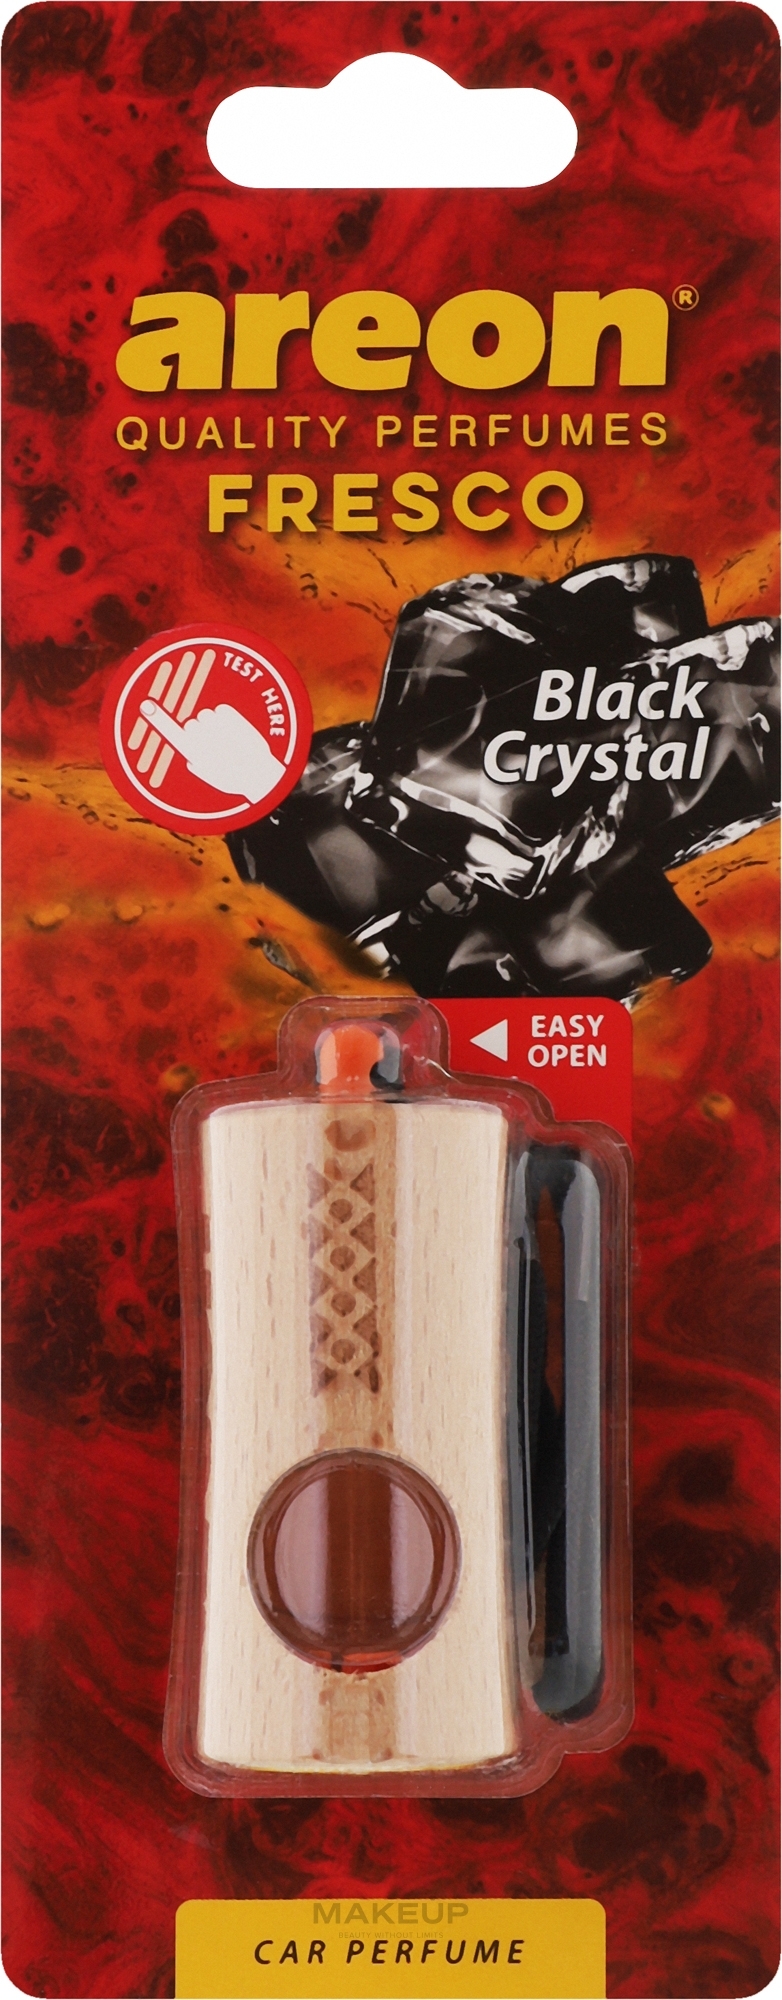 Odświeżacz powietrza do samochodu Black Crystal - Areon Fresco New Black Crystal Car Perfume — Zdjęcie 4 ml